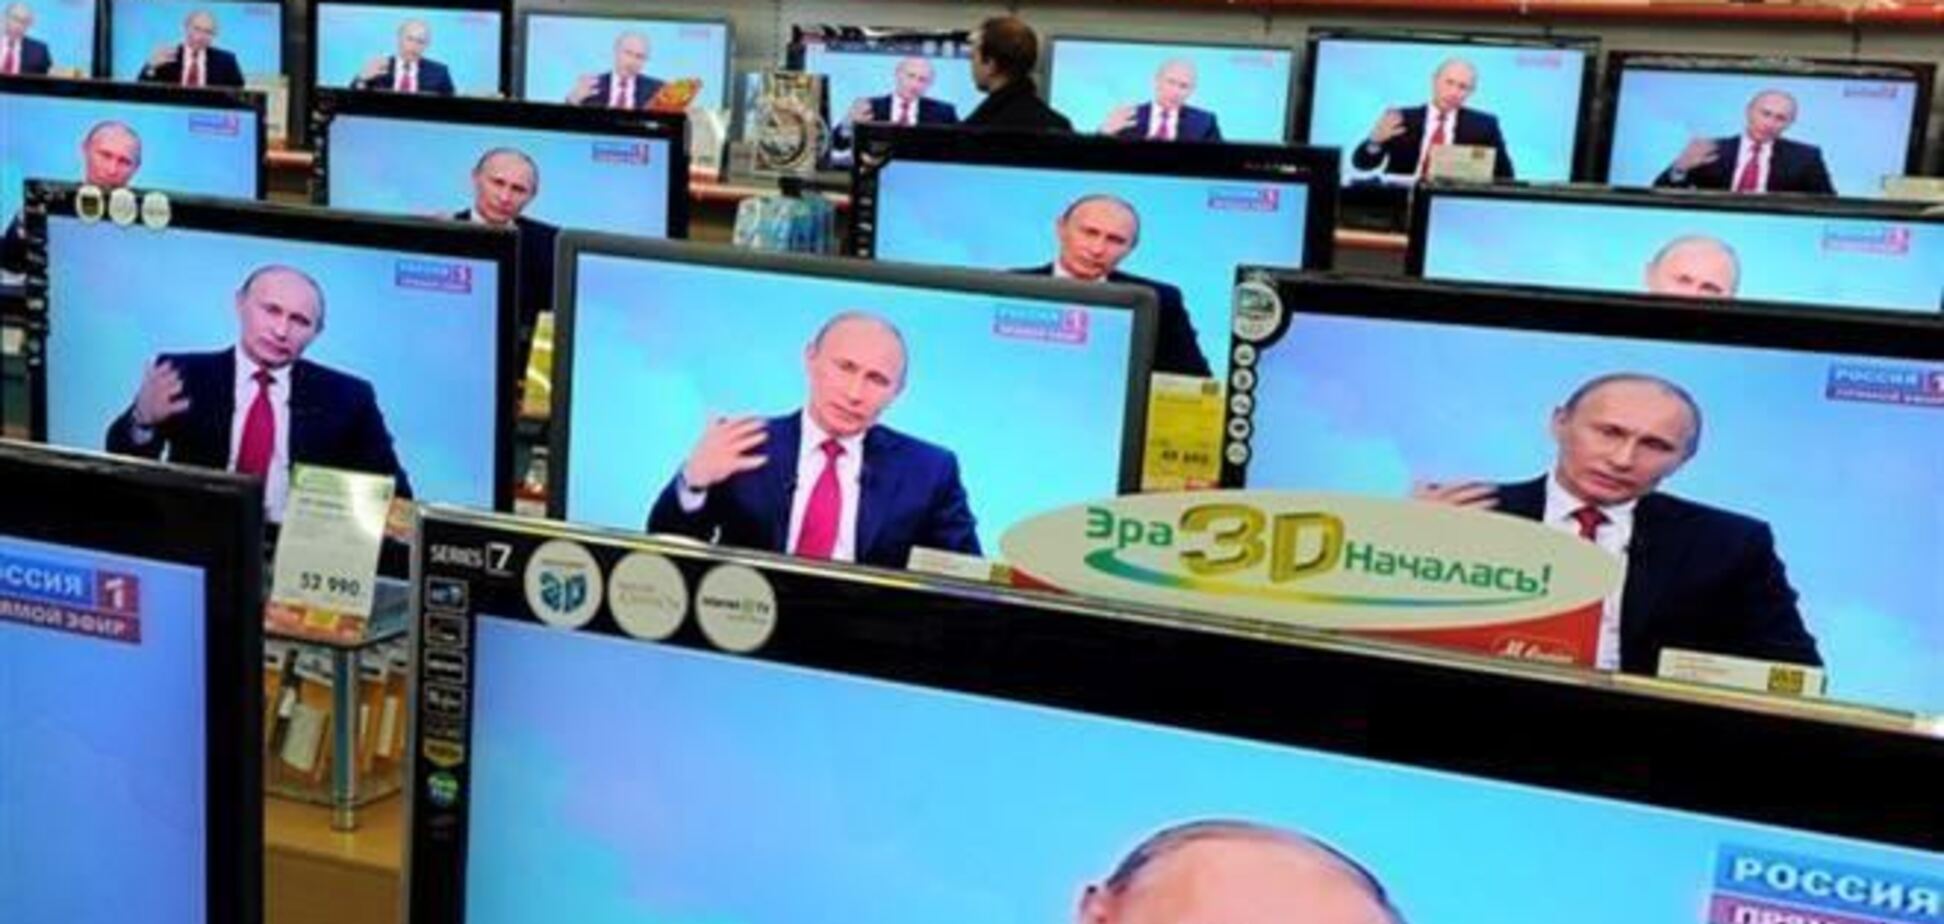 МИД РФ возмущено, что российским журналистам не позволяют объективно 'промывать мозги' украинцам